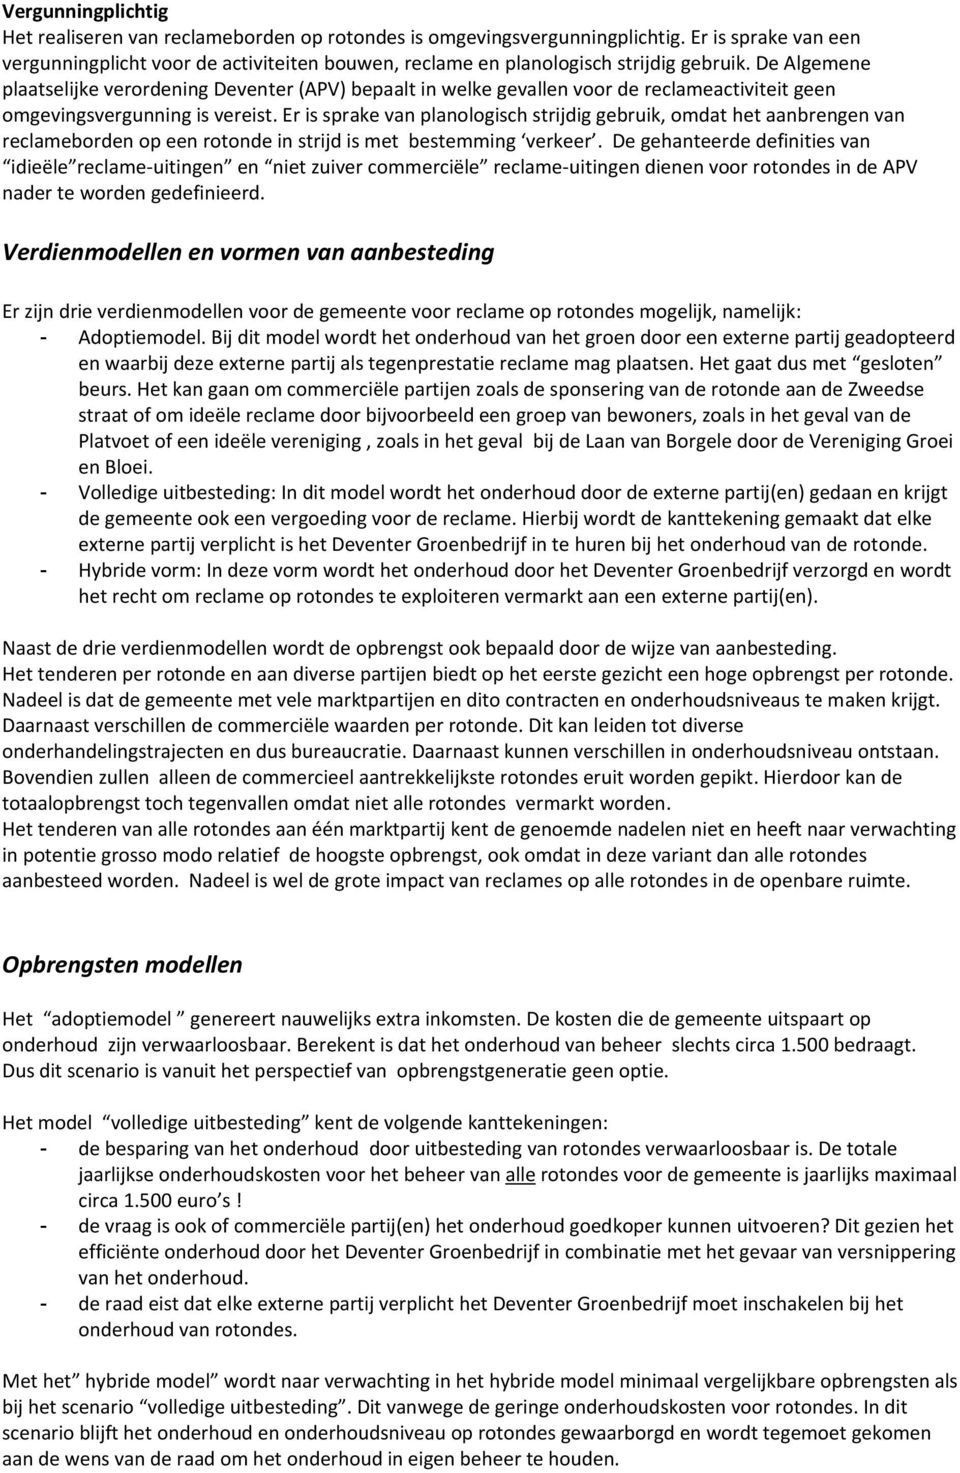 De Algemene plaatselijke verordening Deventer (APV) bepaalt in welke gevallen voor de reclameactiviteit geen omgevingsvergunning is vereist.